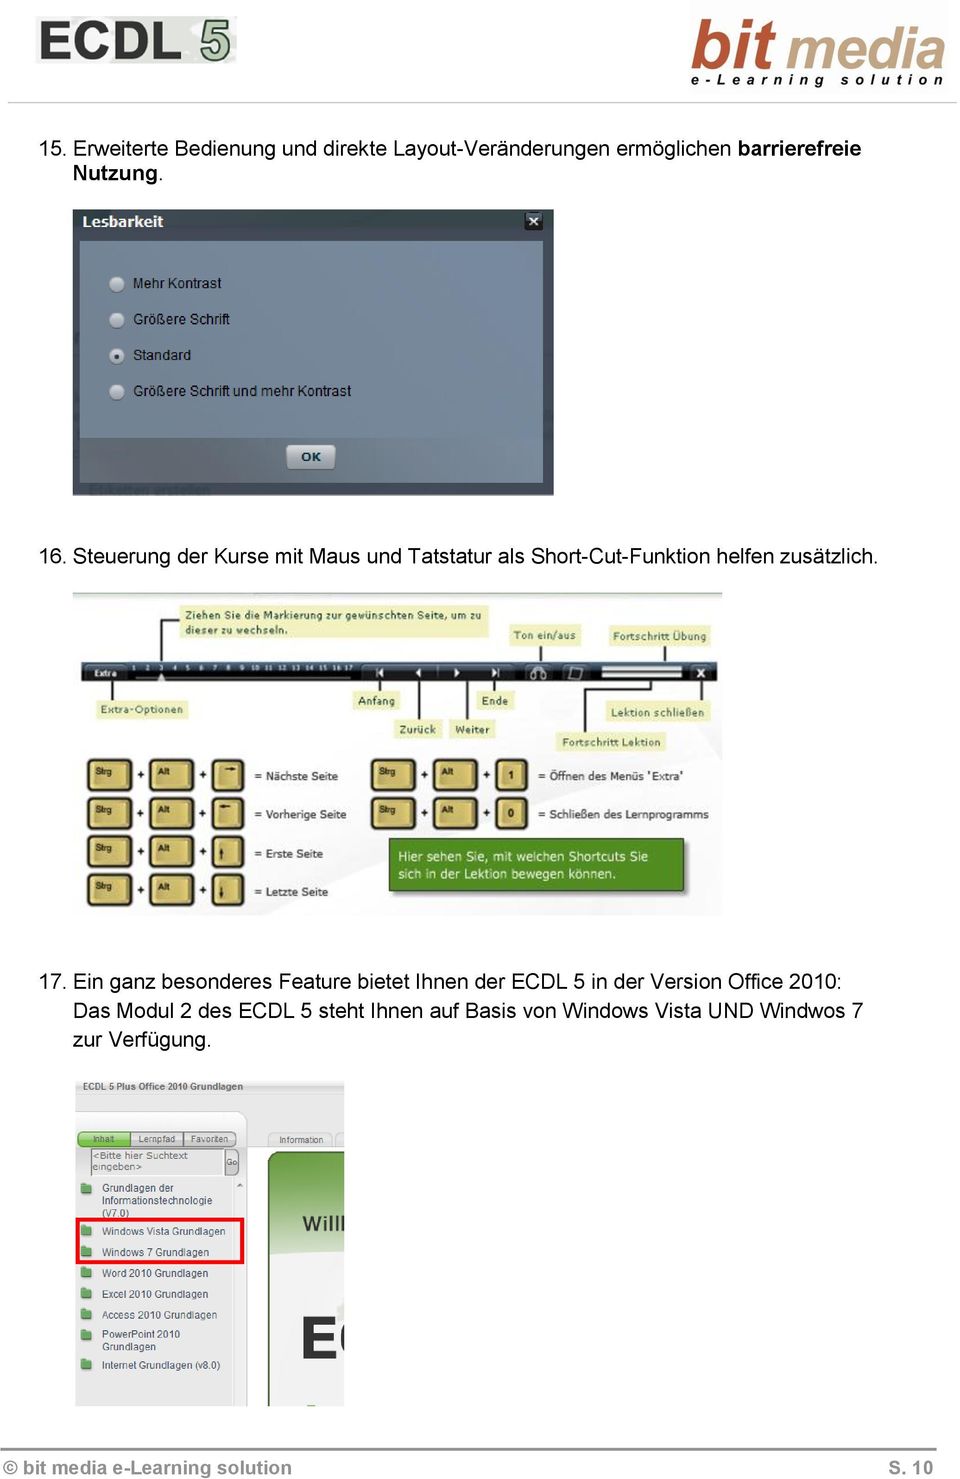 Ein ganz besonderes Feature bietet Ihnen der ECDL 5 in der Version Office 2010: Das Modul 2 des